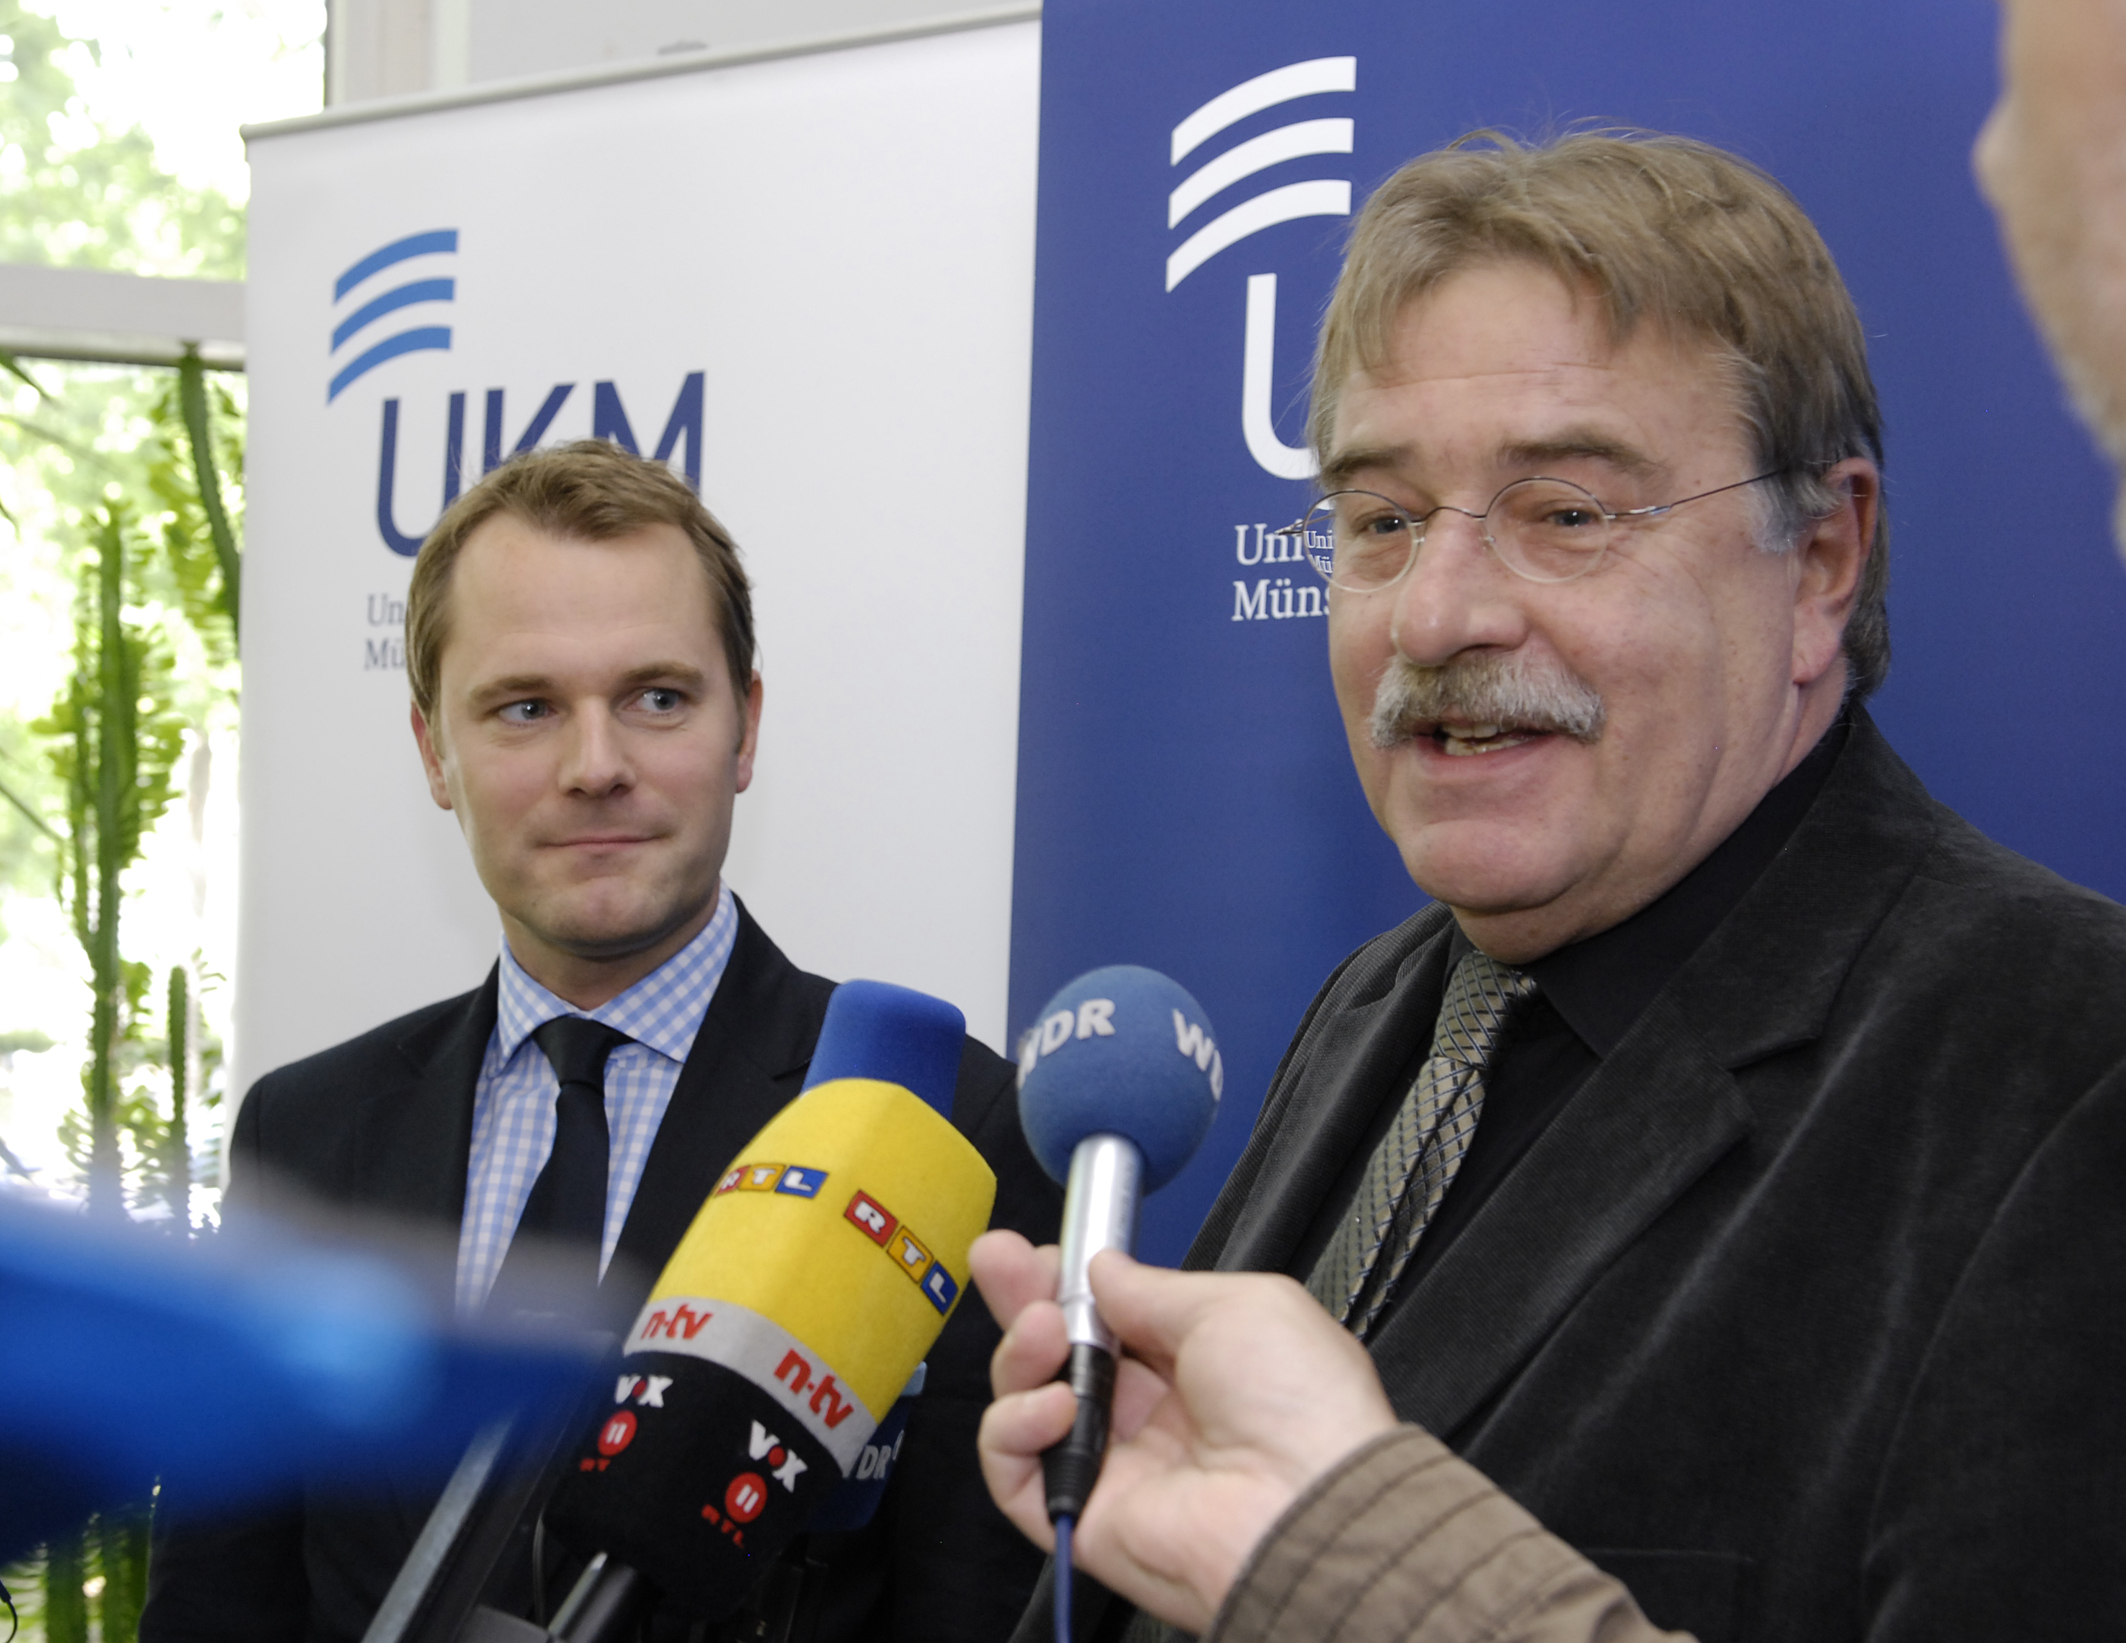 Bundesgesundheitsminister Daniel Bahr (l.) und Prof. Dr. Helge Karch. (Quelle: UKM/Ulrike Dammann)